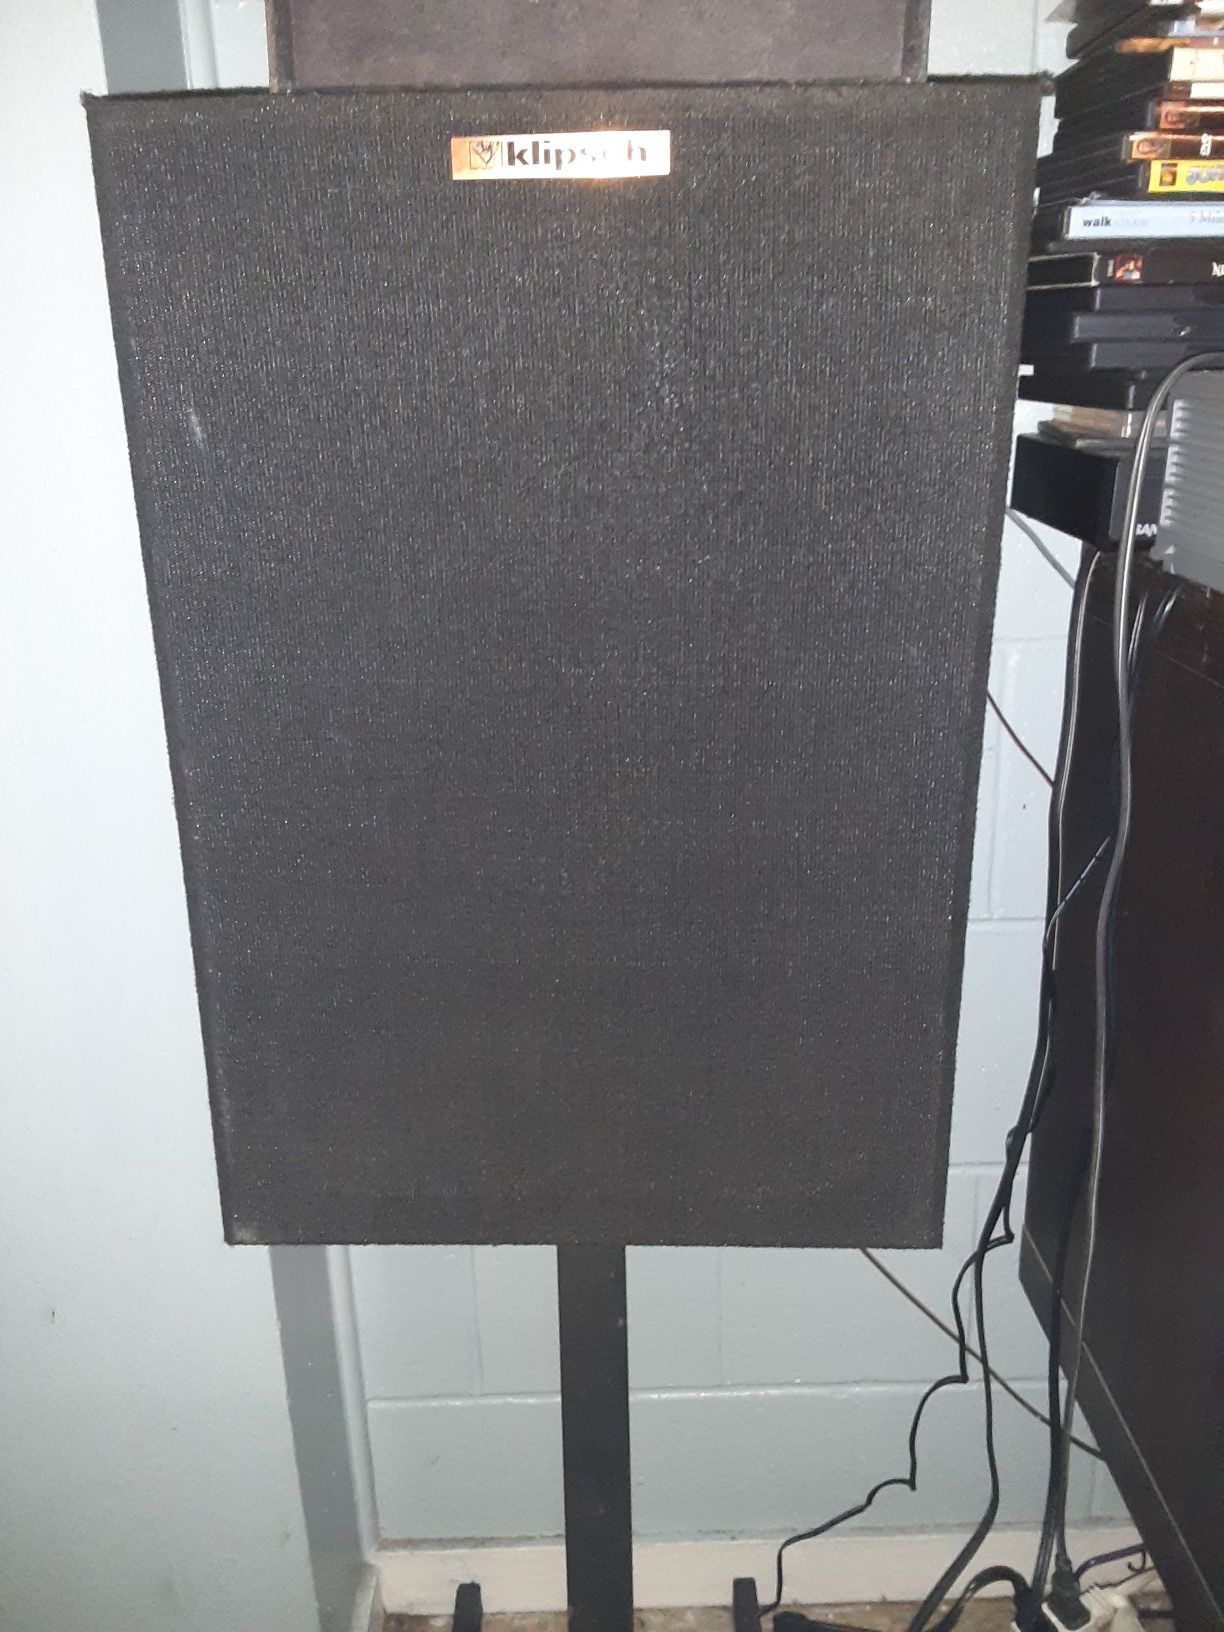 Klipsch speakers two sided